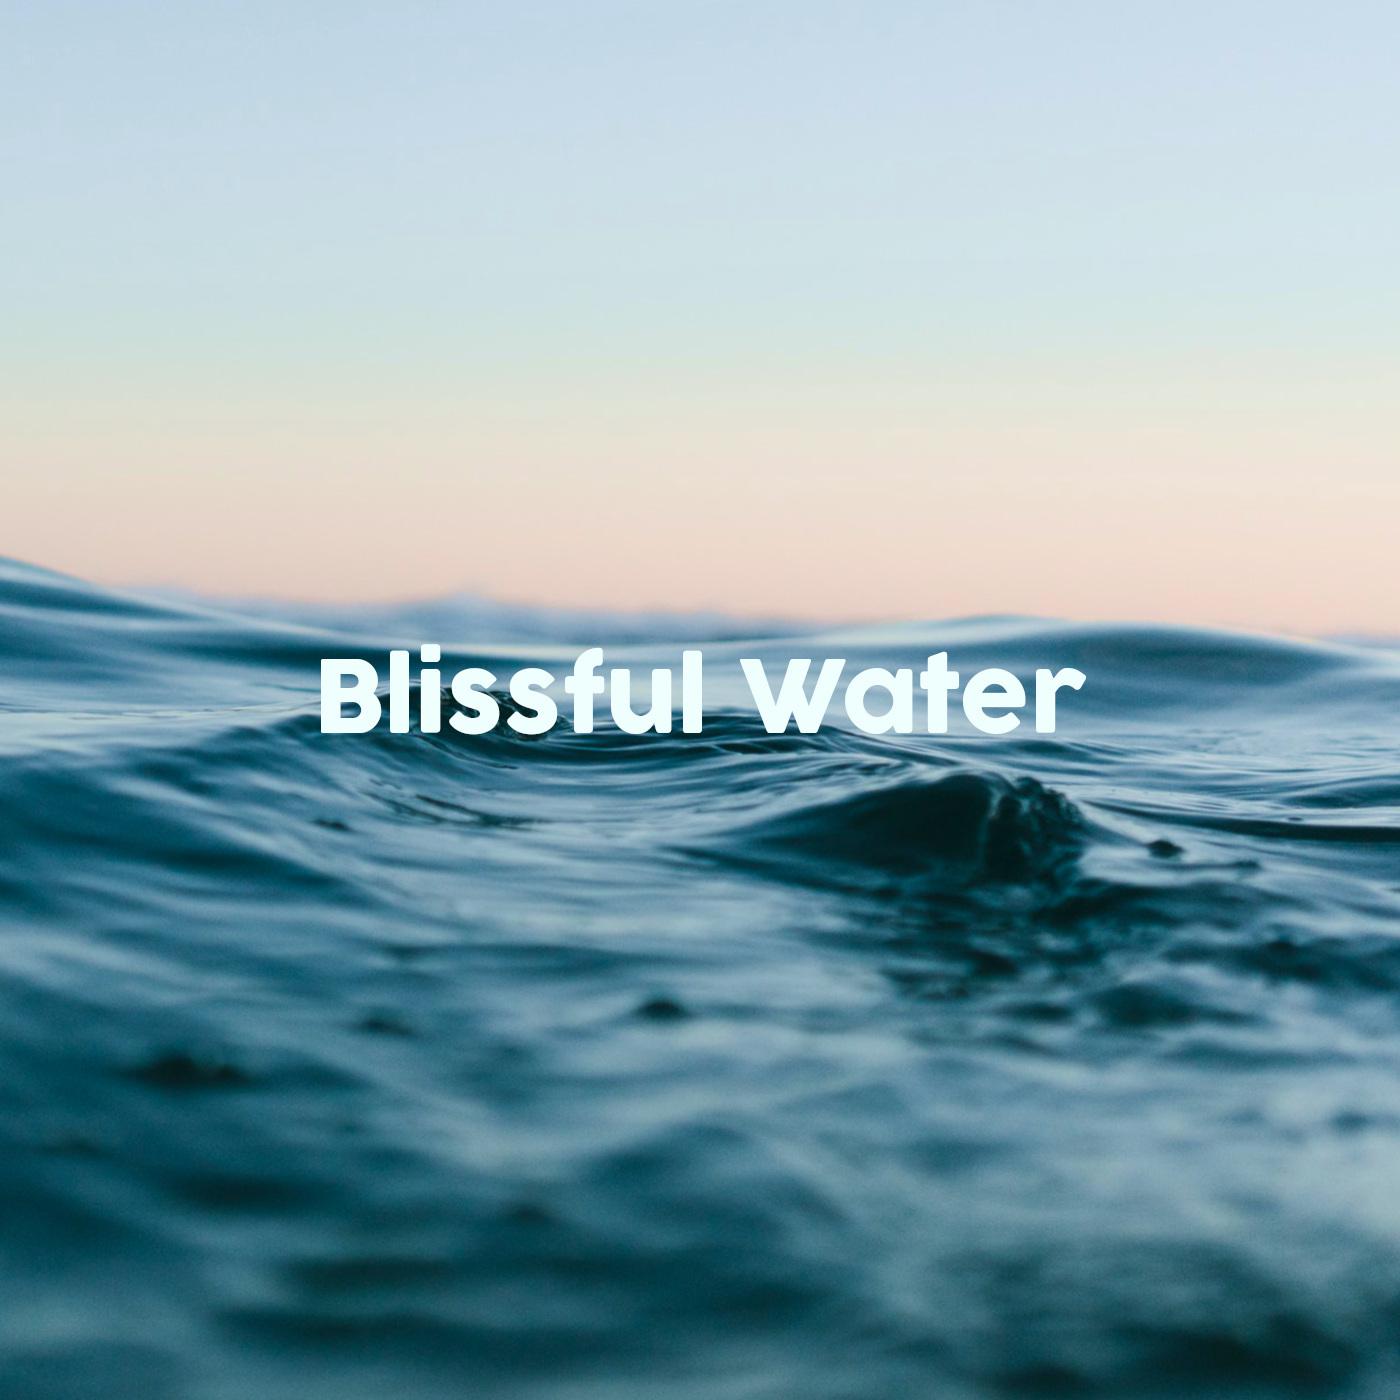 Blissful Water